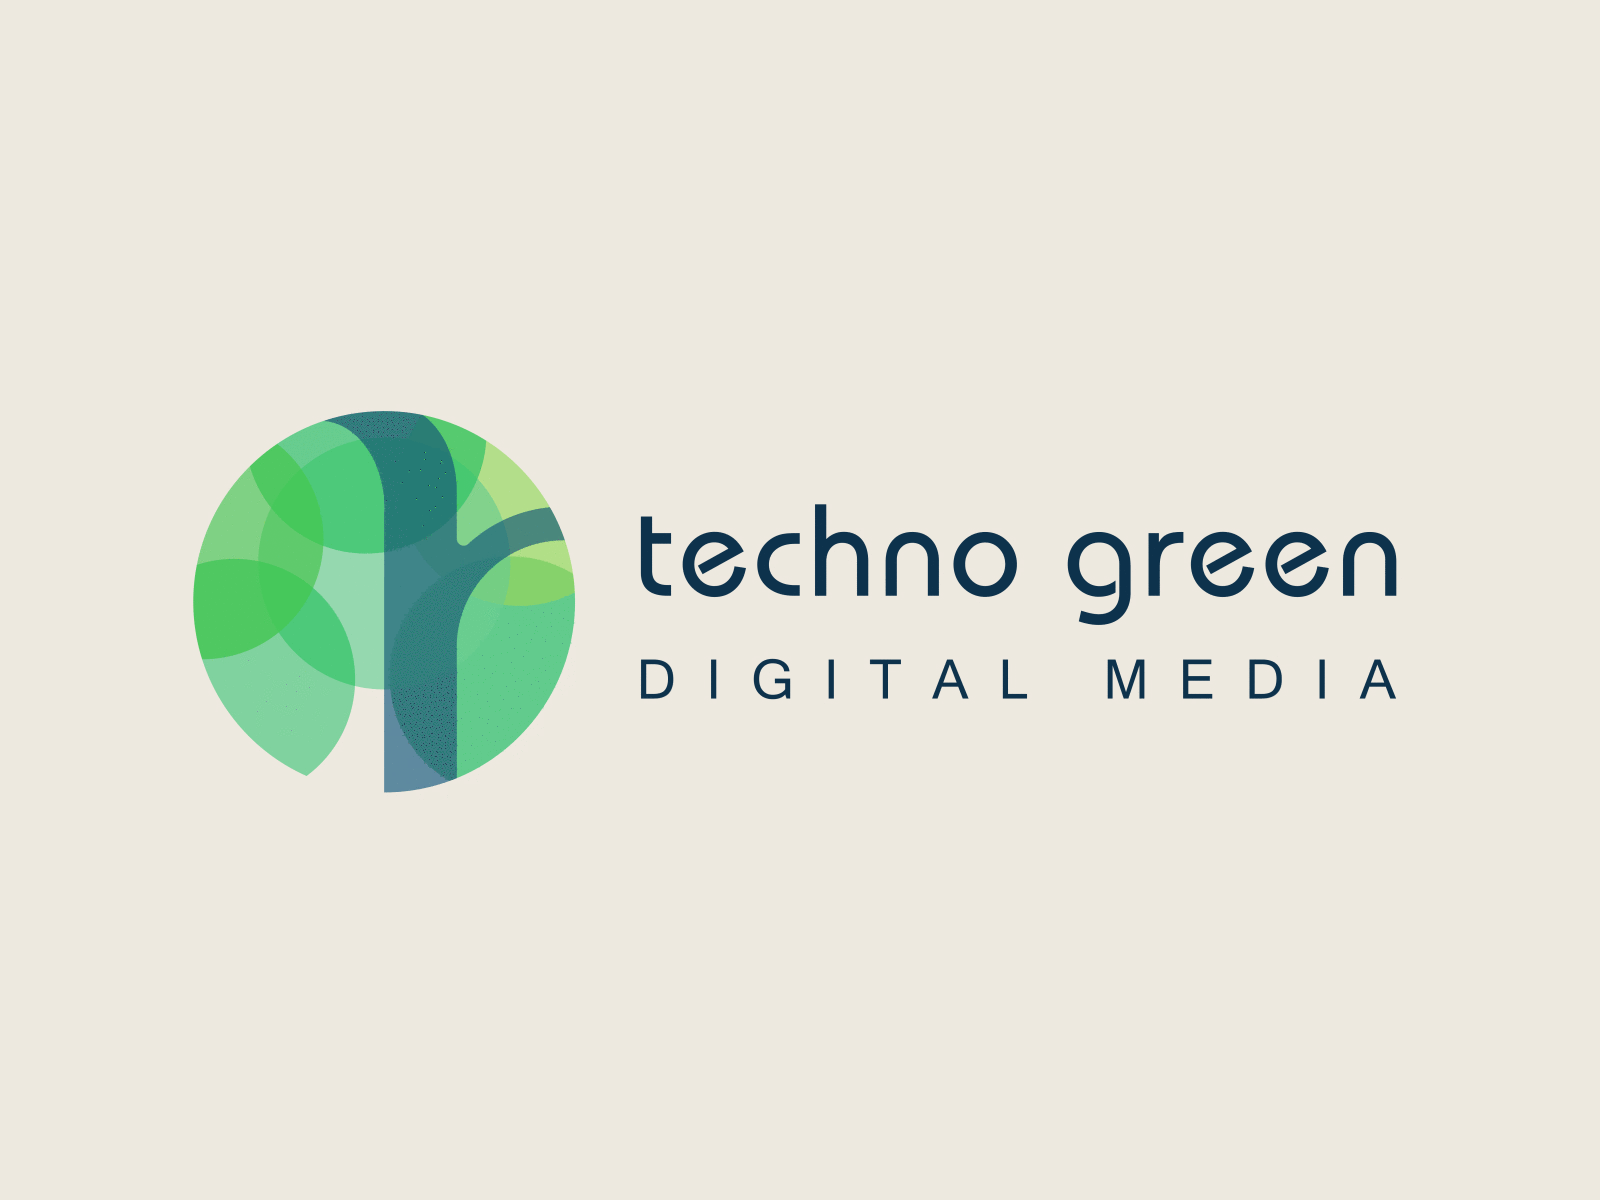 Techno Green - Digital Media Company I Minimalist Logo Design branding design digital media digital media company graphic design illustration logo